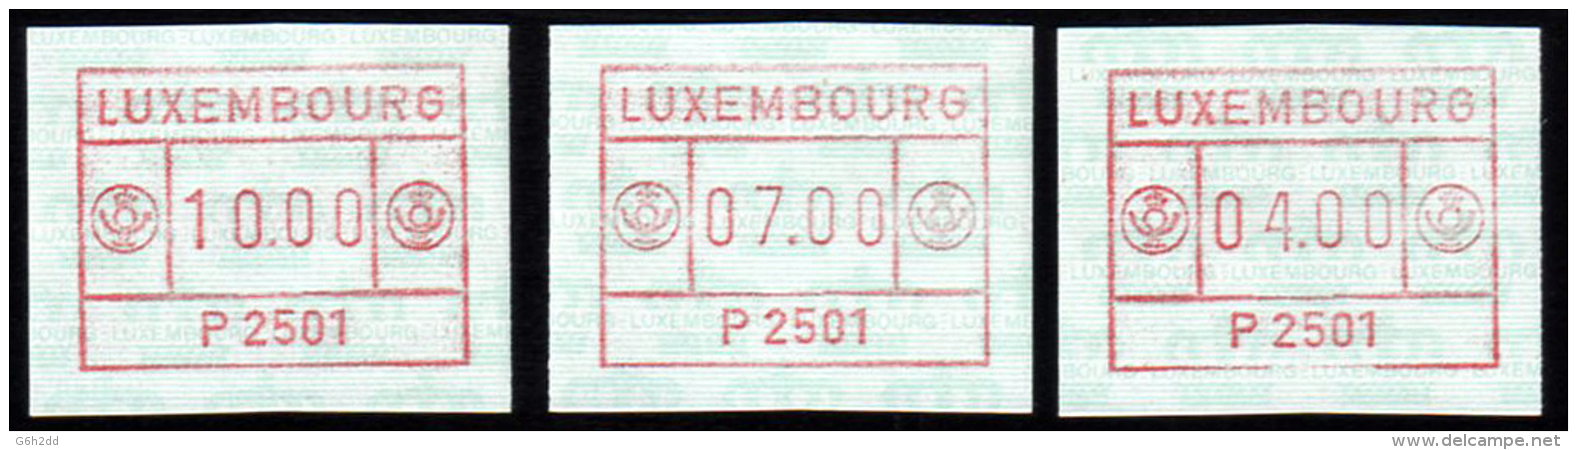 ATM-330- Vignettes D'affranchissement, ATM, Frama - Postage Labels